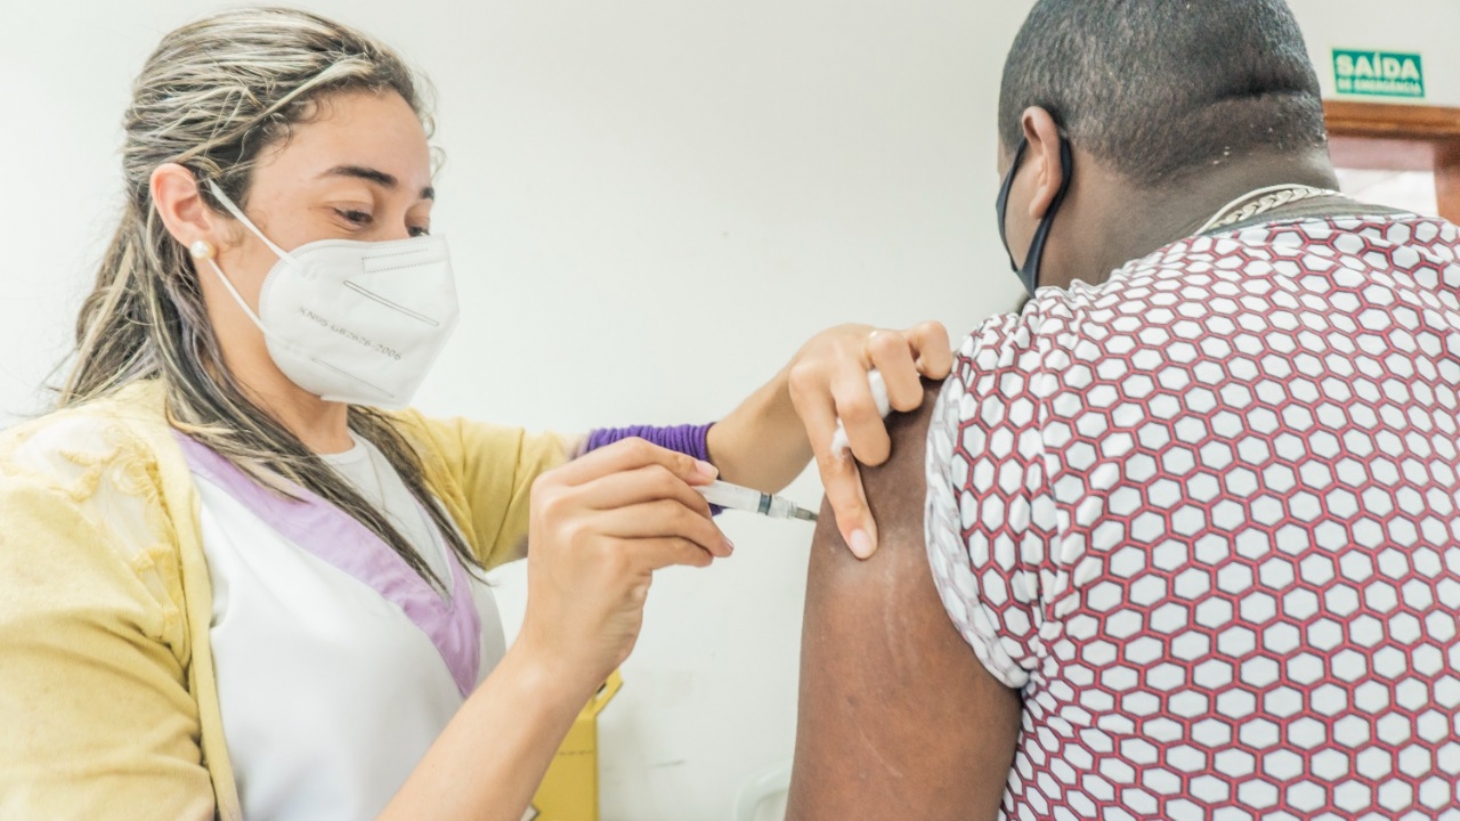 Bertioga realiza mutirão de vacinação neste sábado (11) | Jornal da Orla